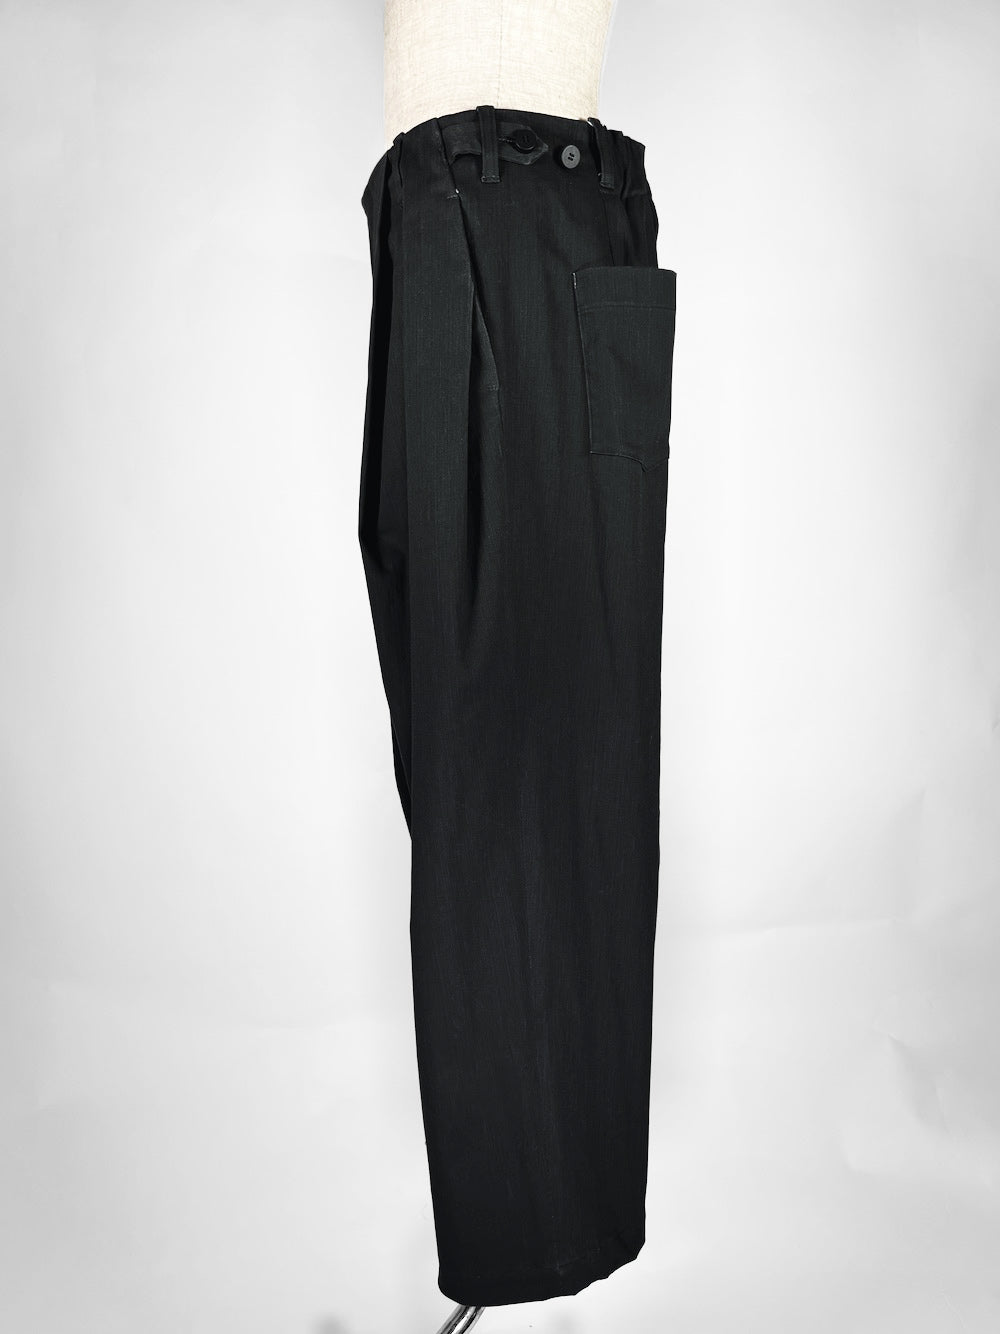 LB23SS-PT05-PDN | 颜料染色口袋褶宽裤 | 黑色颜料染色